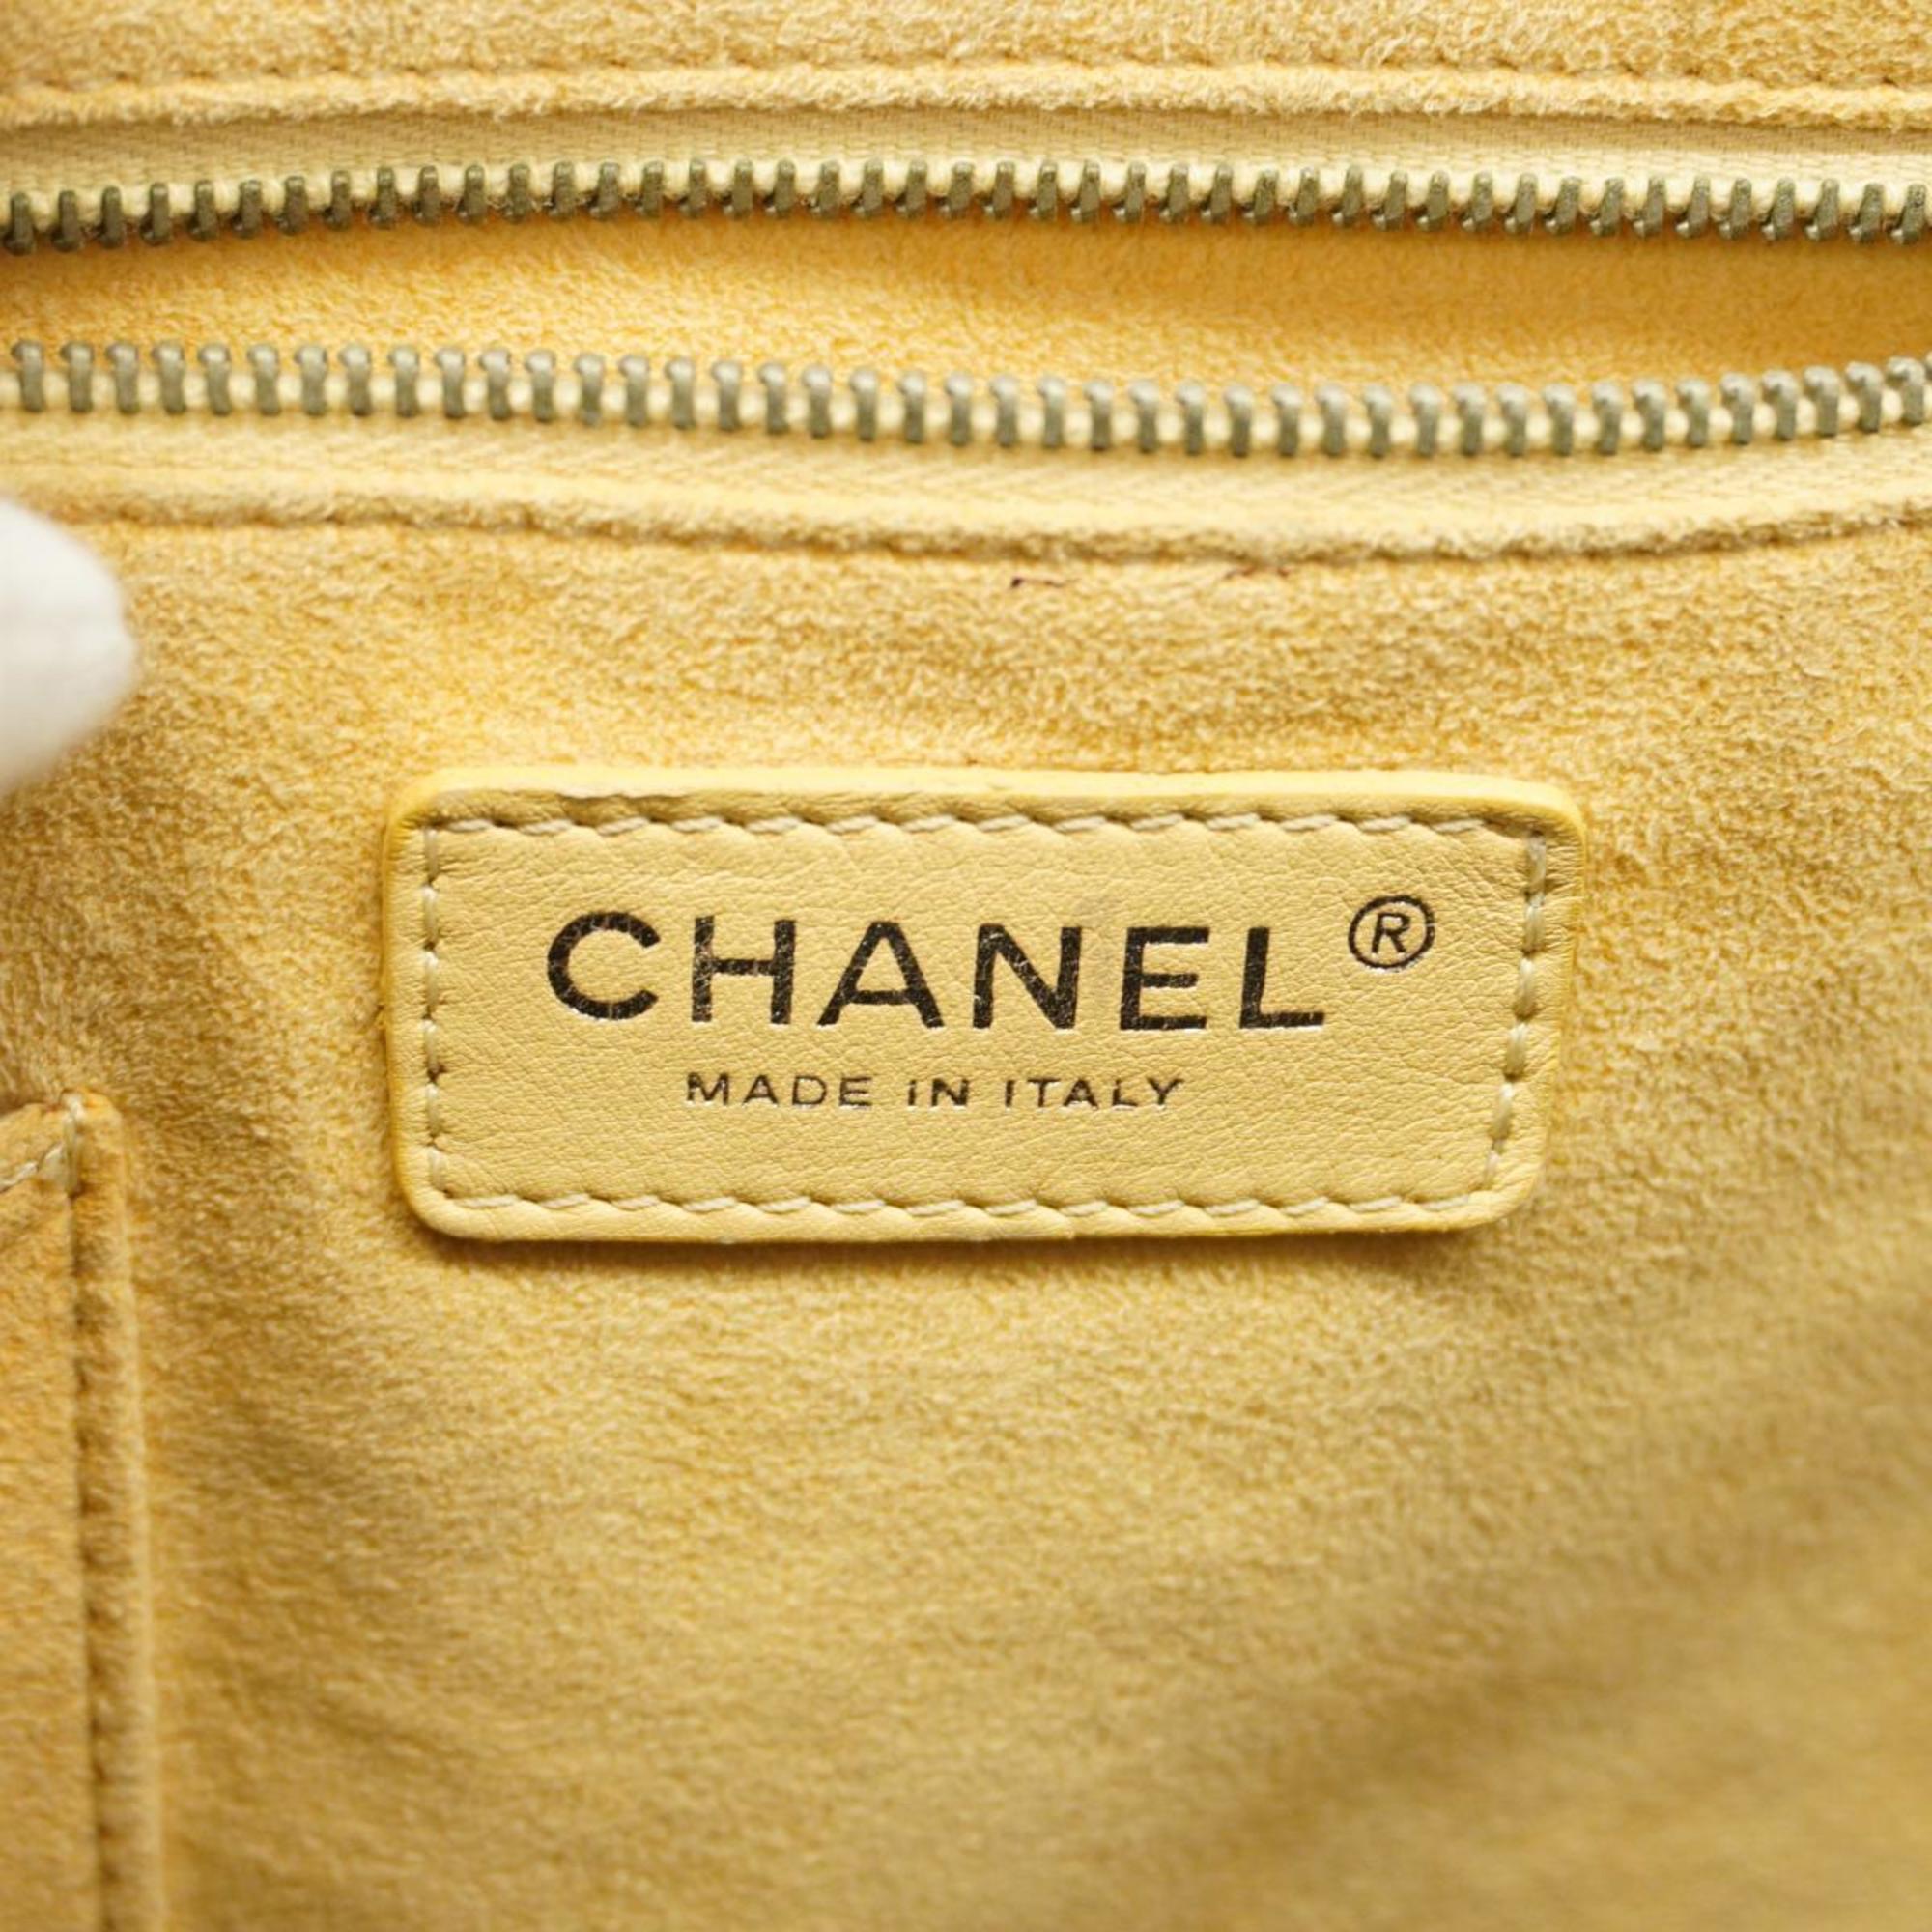 シャネル(Chanel) シャネル ハンドバッグ NO.5 パテントレザー ブラック  レディース